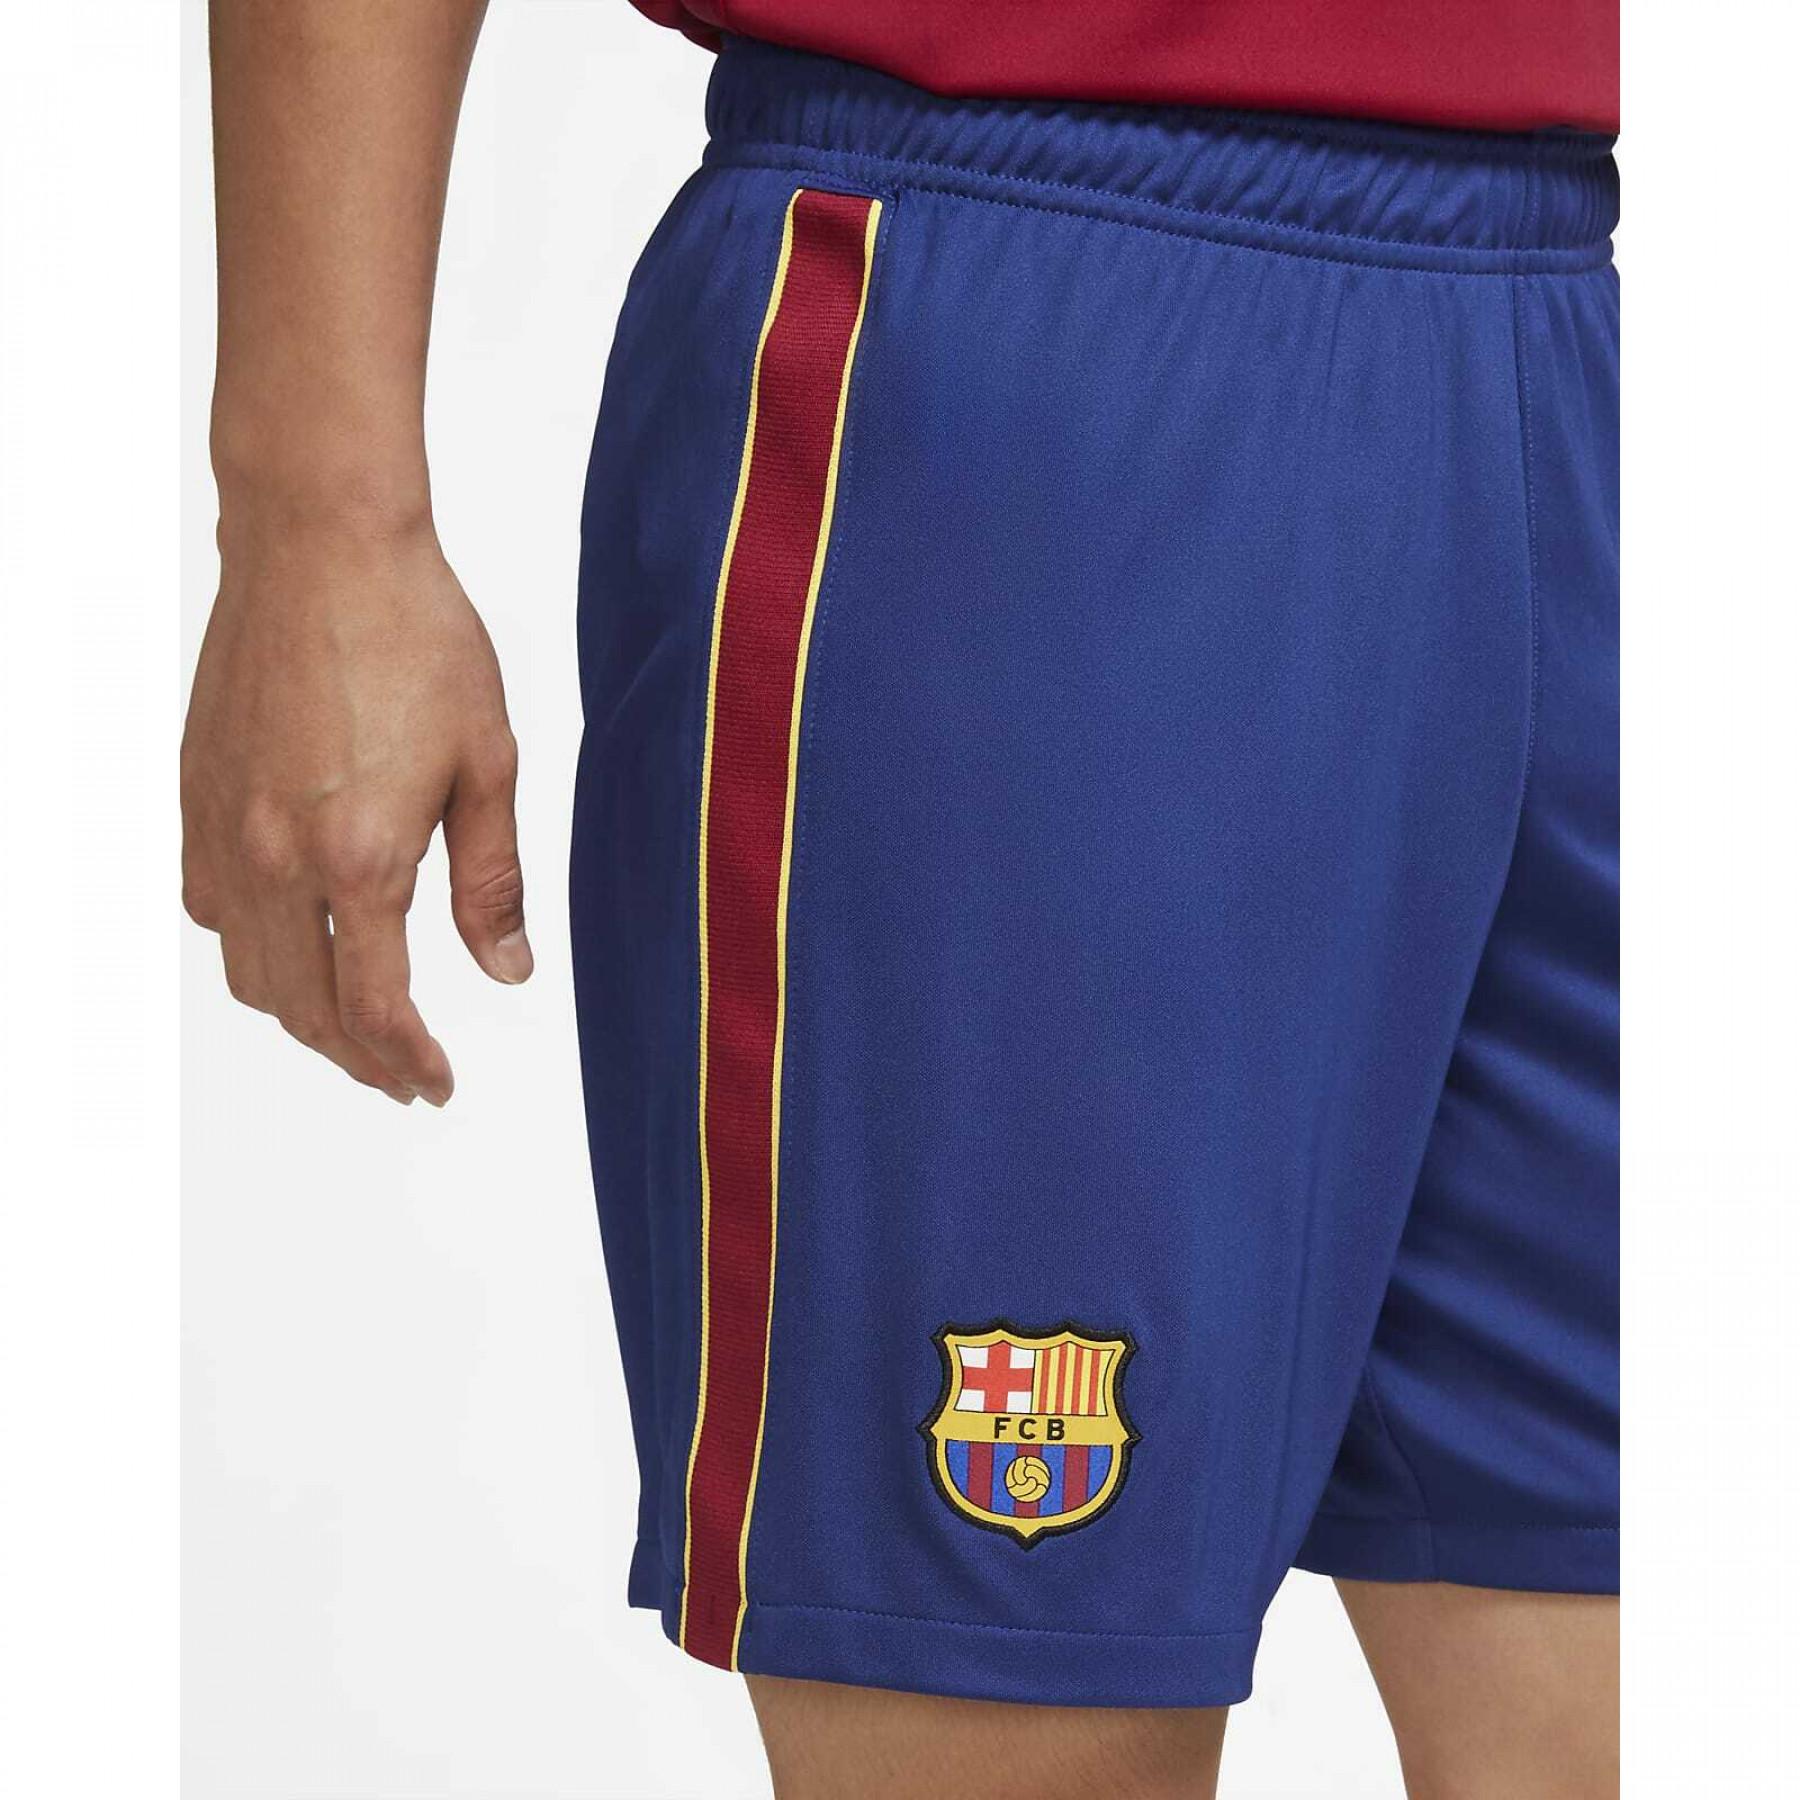 Auténtico pantalón corto del Barcelona 2020/21